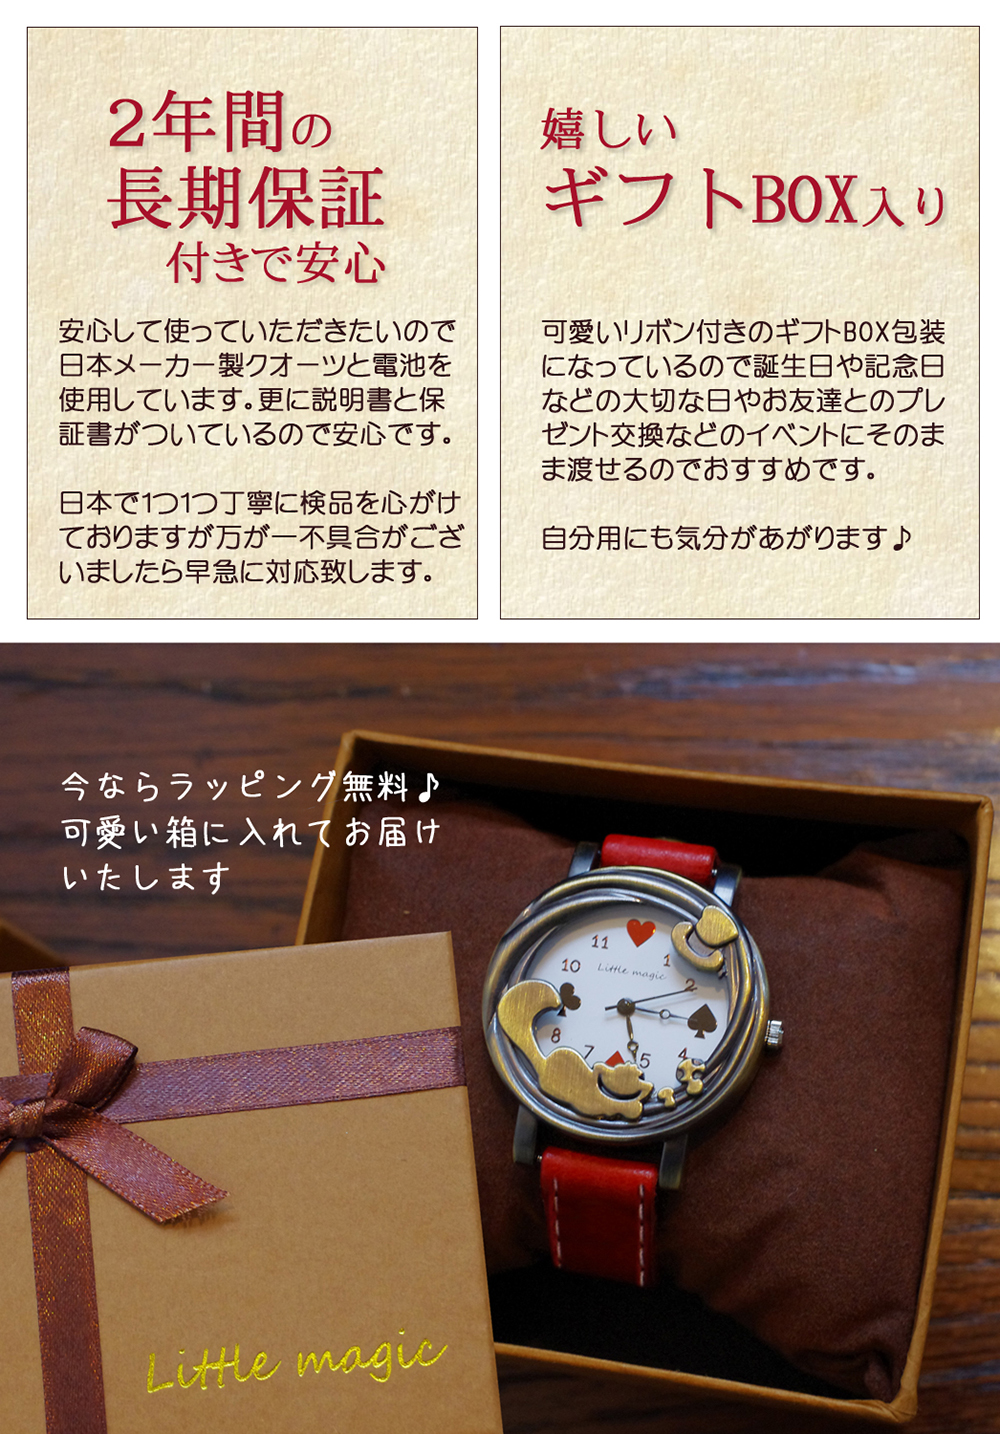 不思議の国のアリス チェシャ猫 アンティーク 腕時計 レディース 猫 時計 子供と大人兼用 対応年齢 5歳 革ベルト 日本製クオーツ 公式 Little Magic Watch 自分らしくを楽しむ